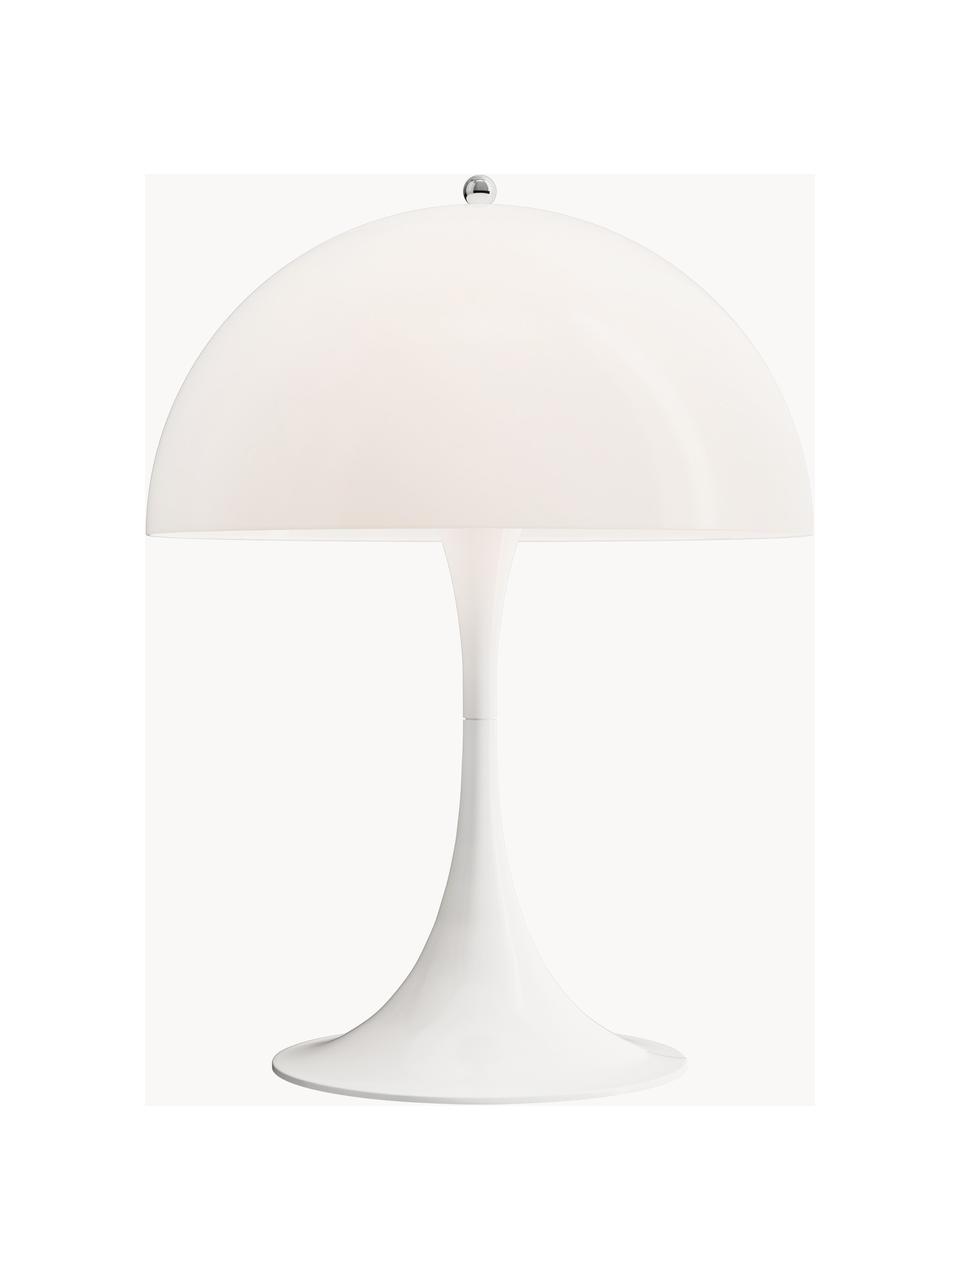 Lampa stołowa Panthella, W 55 cm, Białe szkło akrylowe, Ø 40 x 55 cm